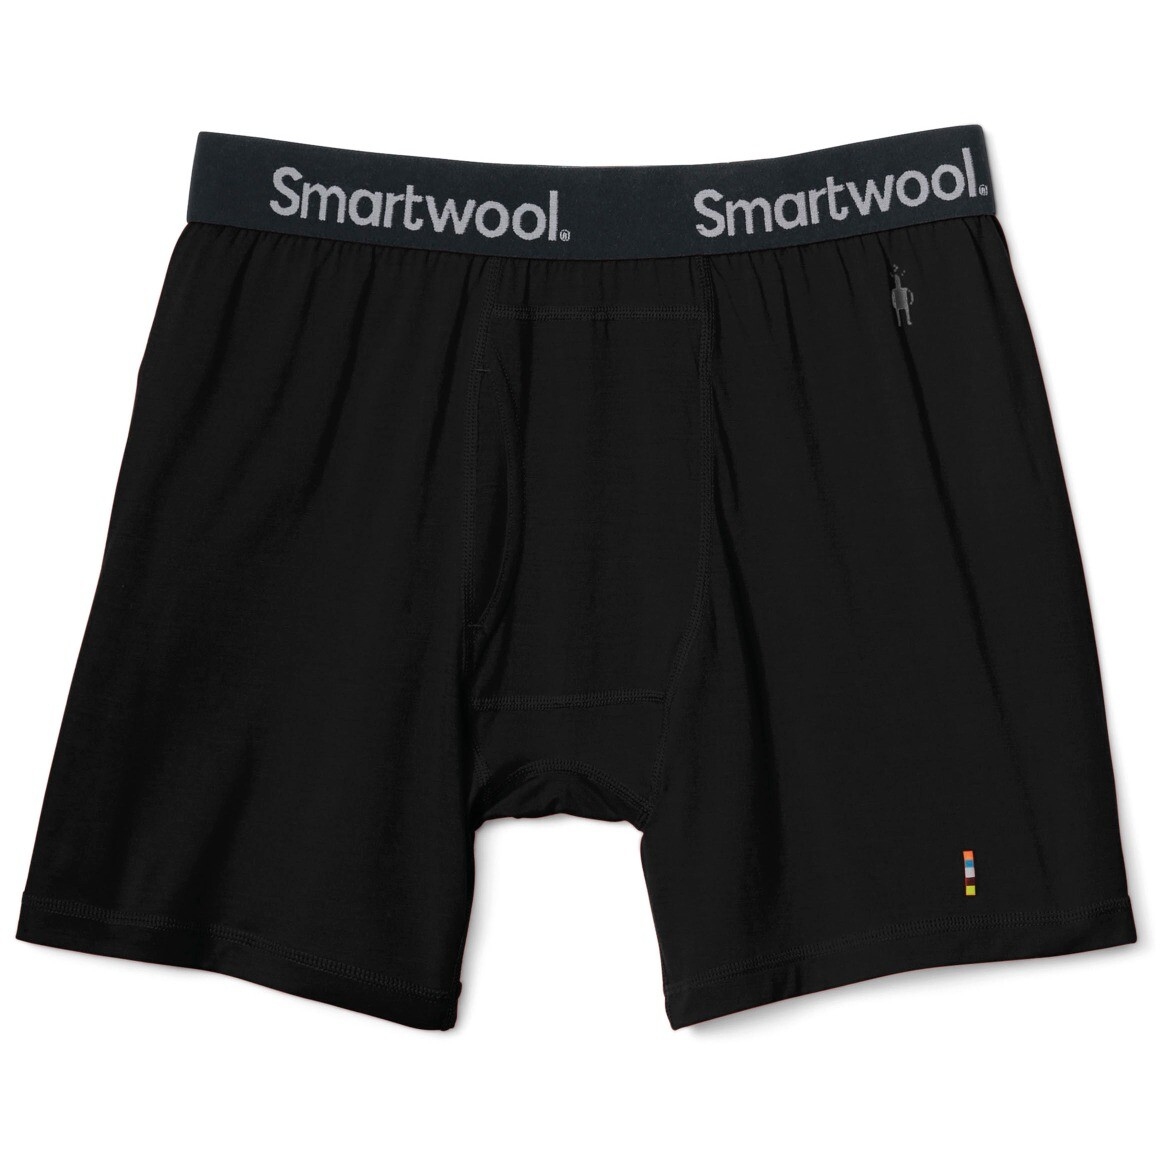 Produktbild von SmartWool Merino Boxed Boxershorts Herren - 001 schwarz